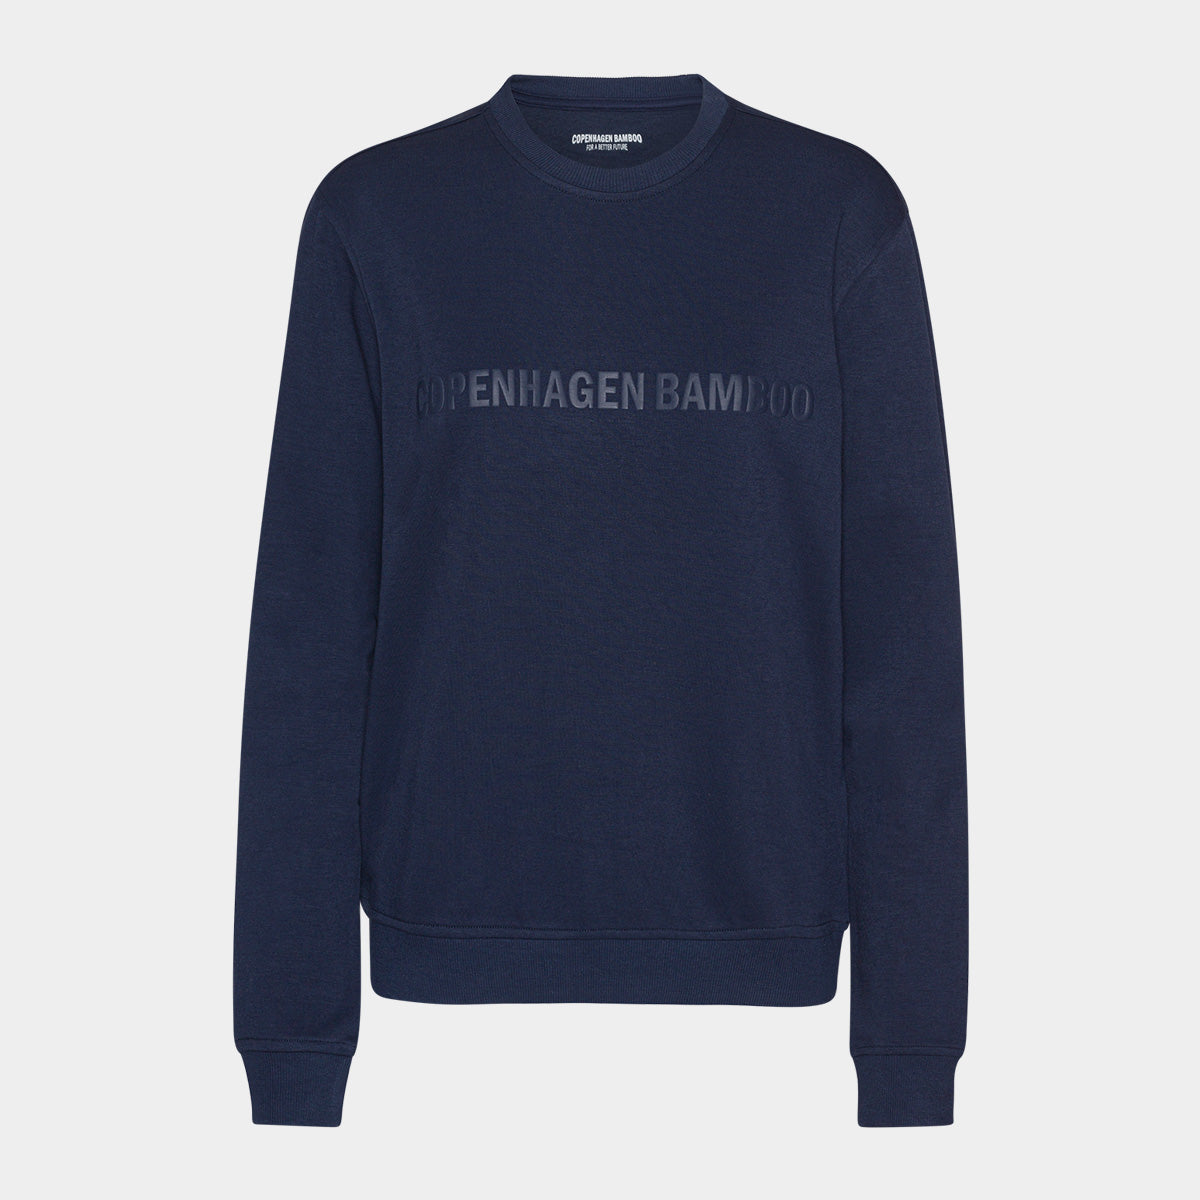 Se Navy bambus sweatshirt til dame med logo fra Copenhagen Bamboo, XXL hos Bambustøj.dk